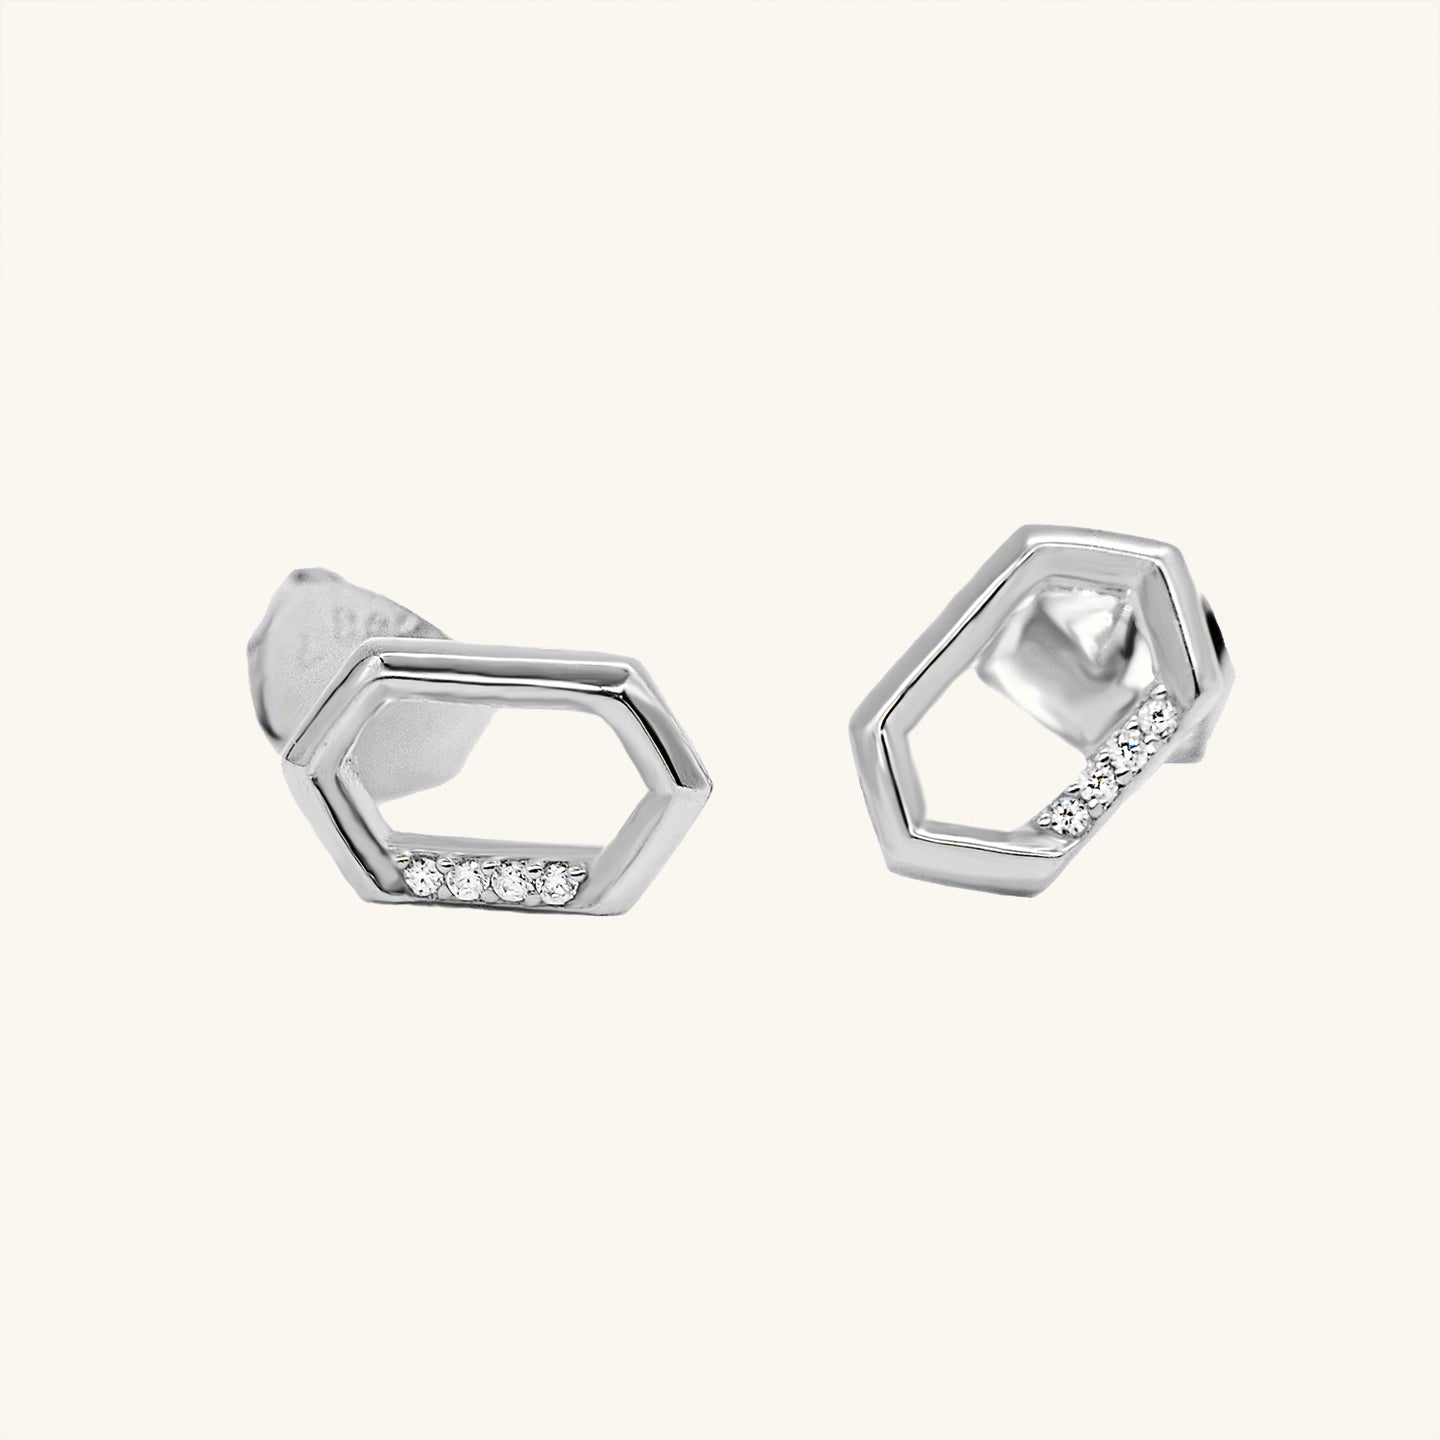 Silver Hexagonal CZ Stud Earrings by HYMI JEWELRY